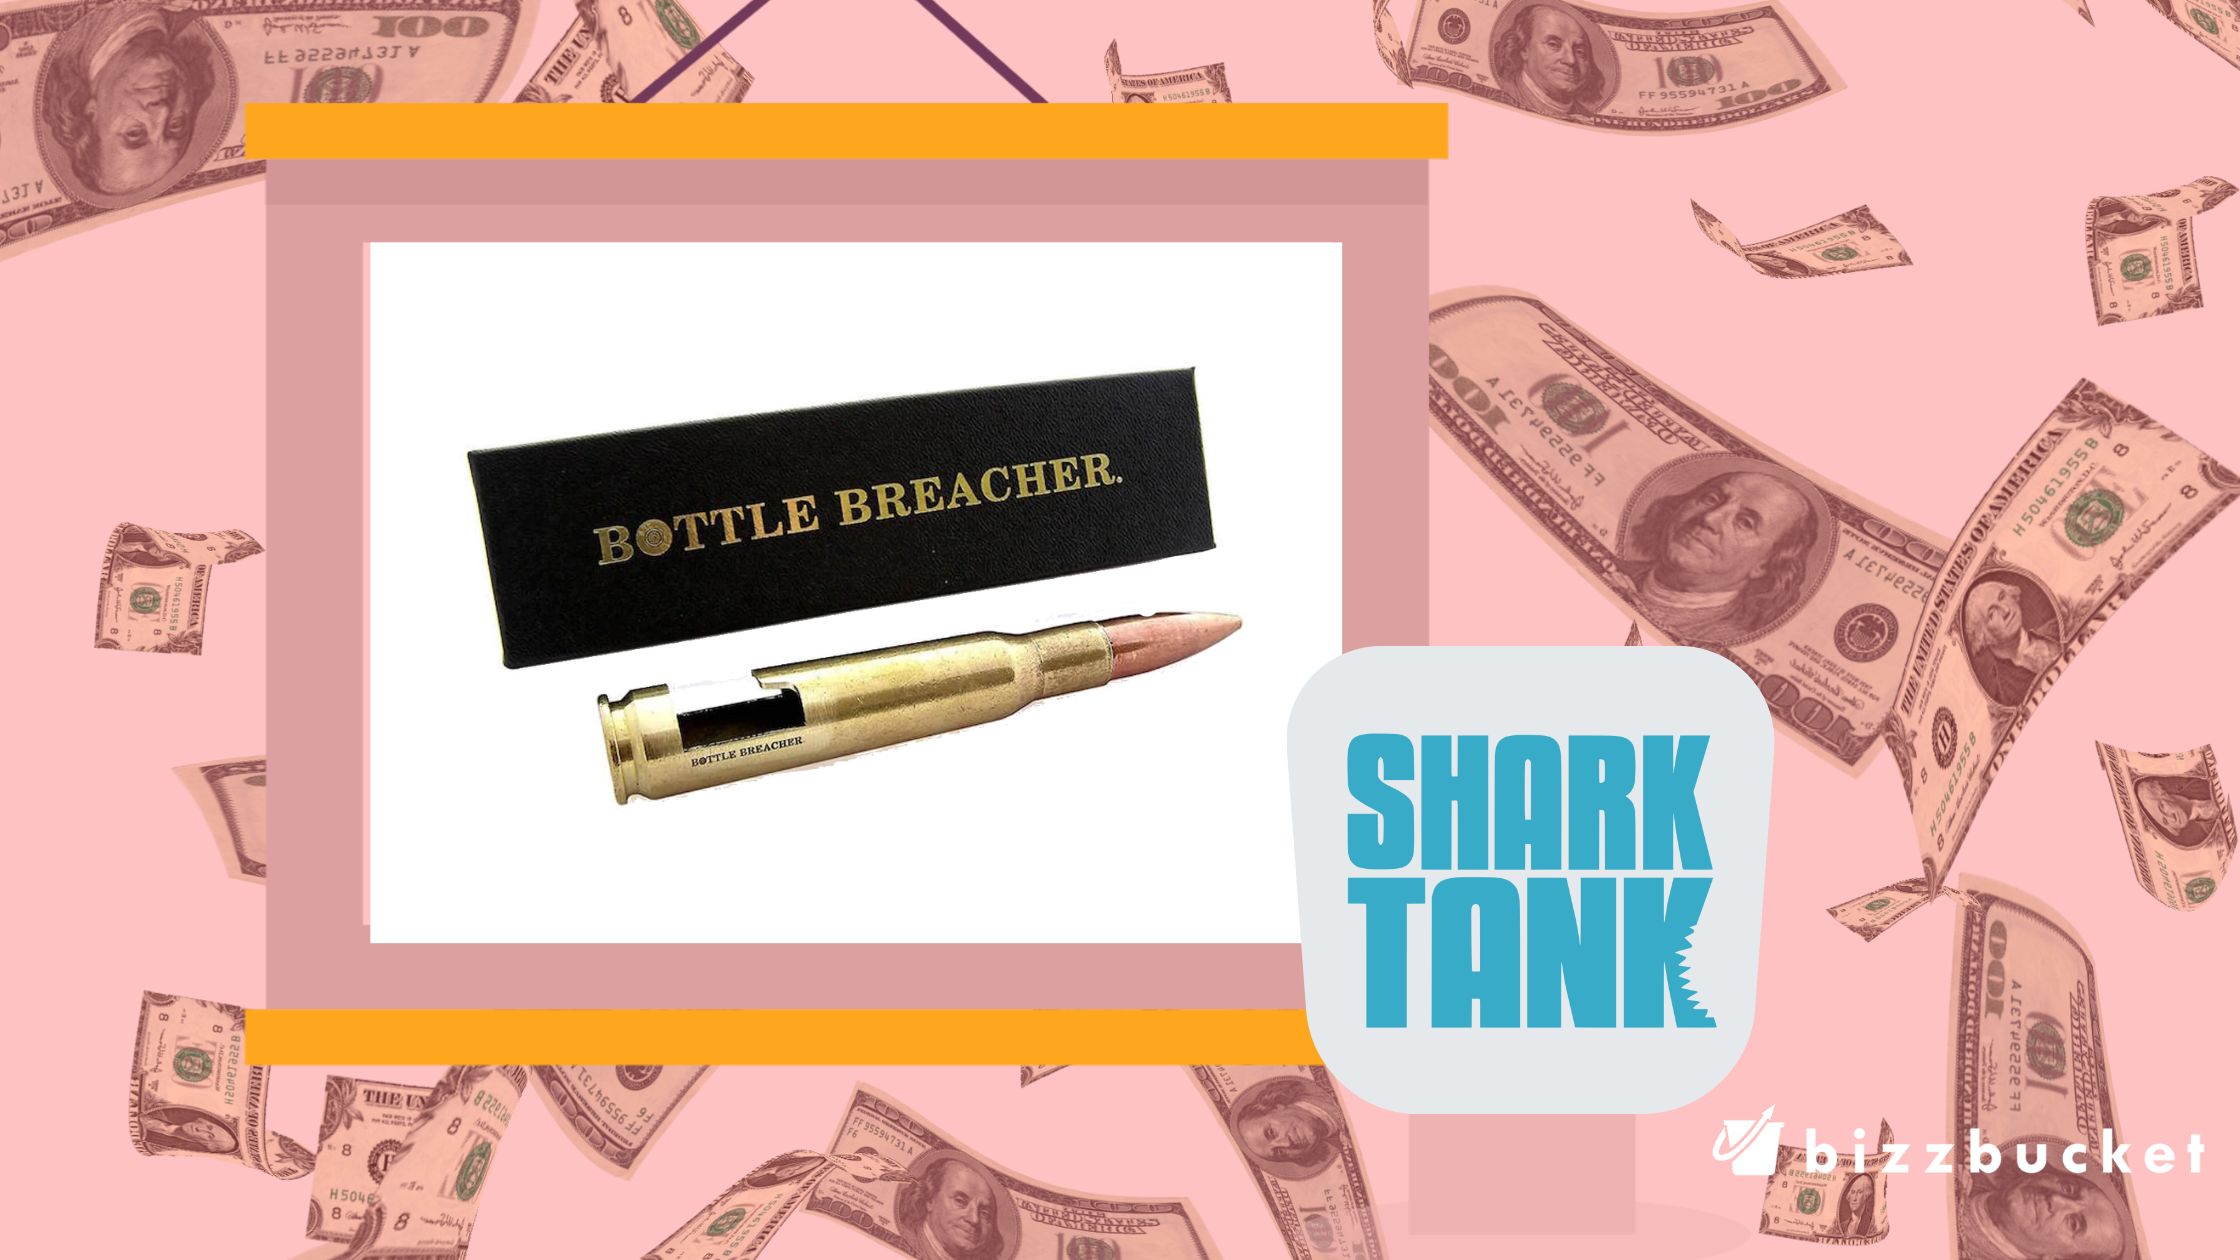 Bottle Breacher shark tank